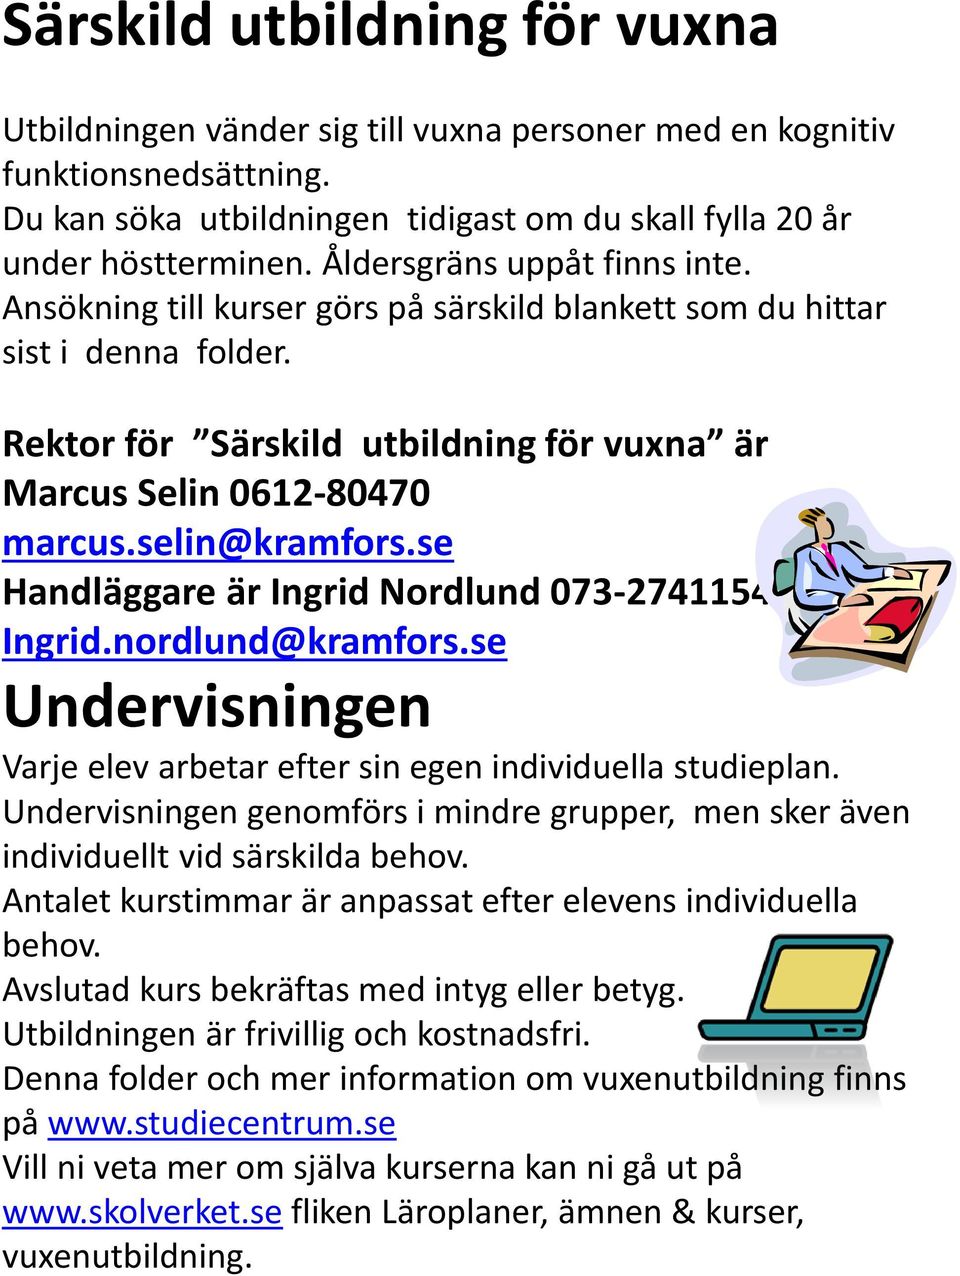 selin@kramfors.se Handläggare är Ingrid Nordlund 073-2741154 Ingrid.nordlund@kramfors.se Undervisningen Varje elev arbetar efter sin egen individuella studieplan.